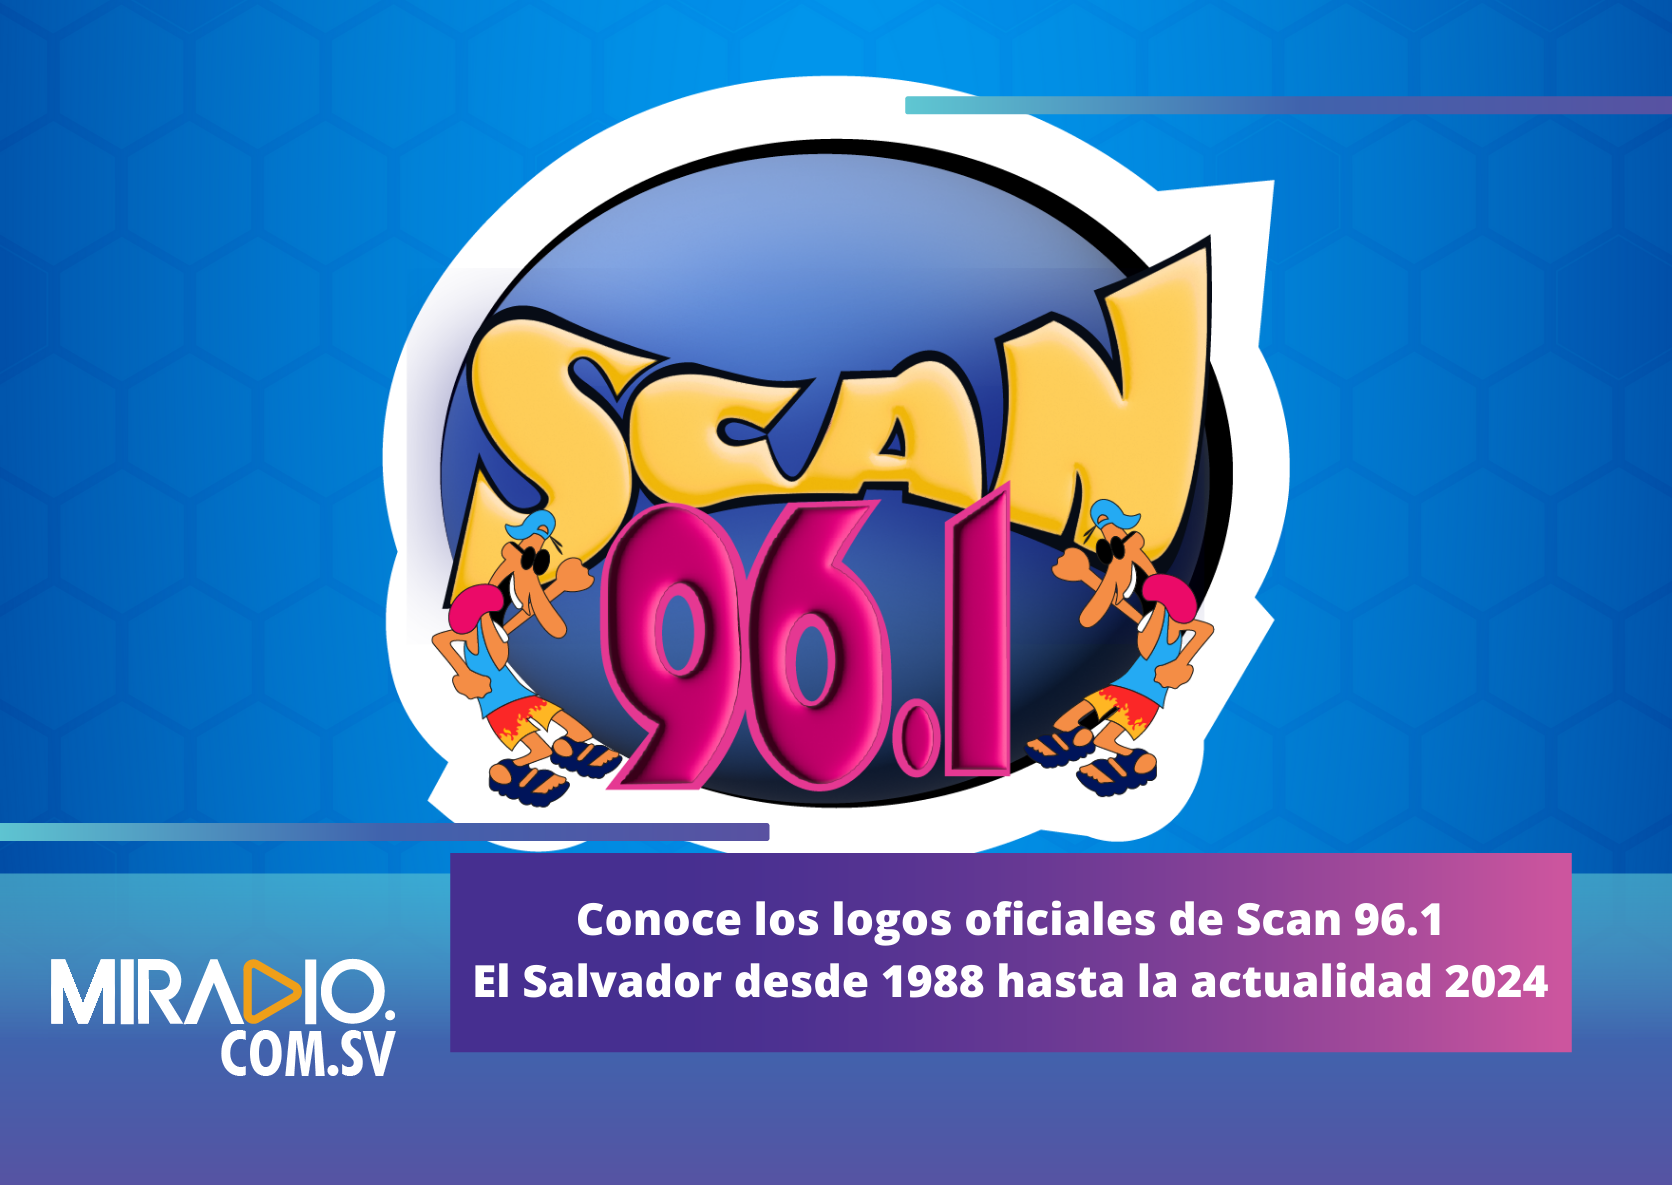 Estos han sido los logos oficiales de Scan 96.1 El Salvador desde 1988 hasta la actualidad 2024